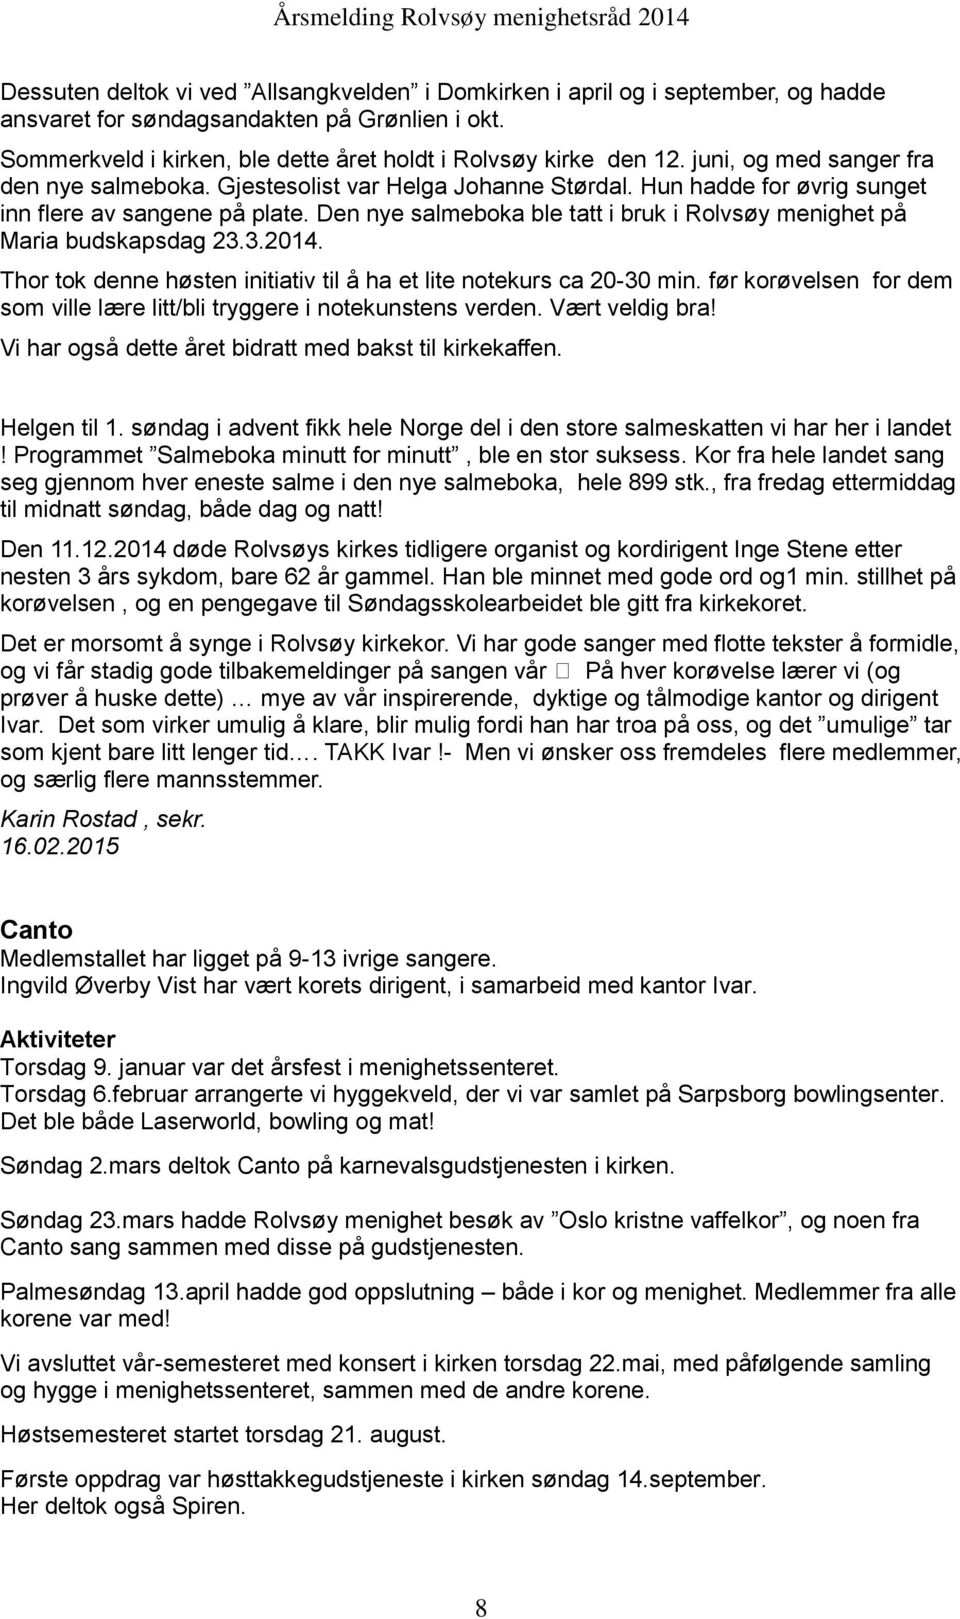 Den nye salmeboka ble tatt i bruk i Rolvsøy menighet på Maria budskapsdag 23.3.2014. Thor tok denne høsten initiativ til å ha et lite notekurs ca 20-30 min.